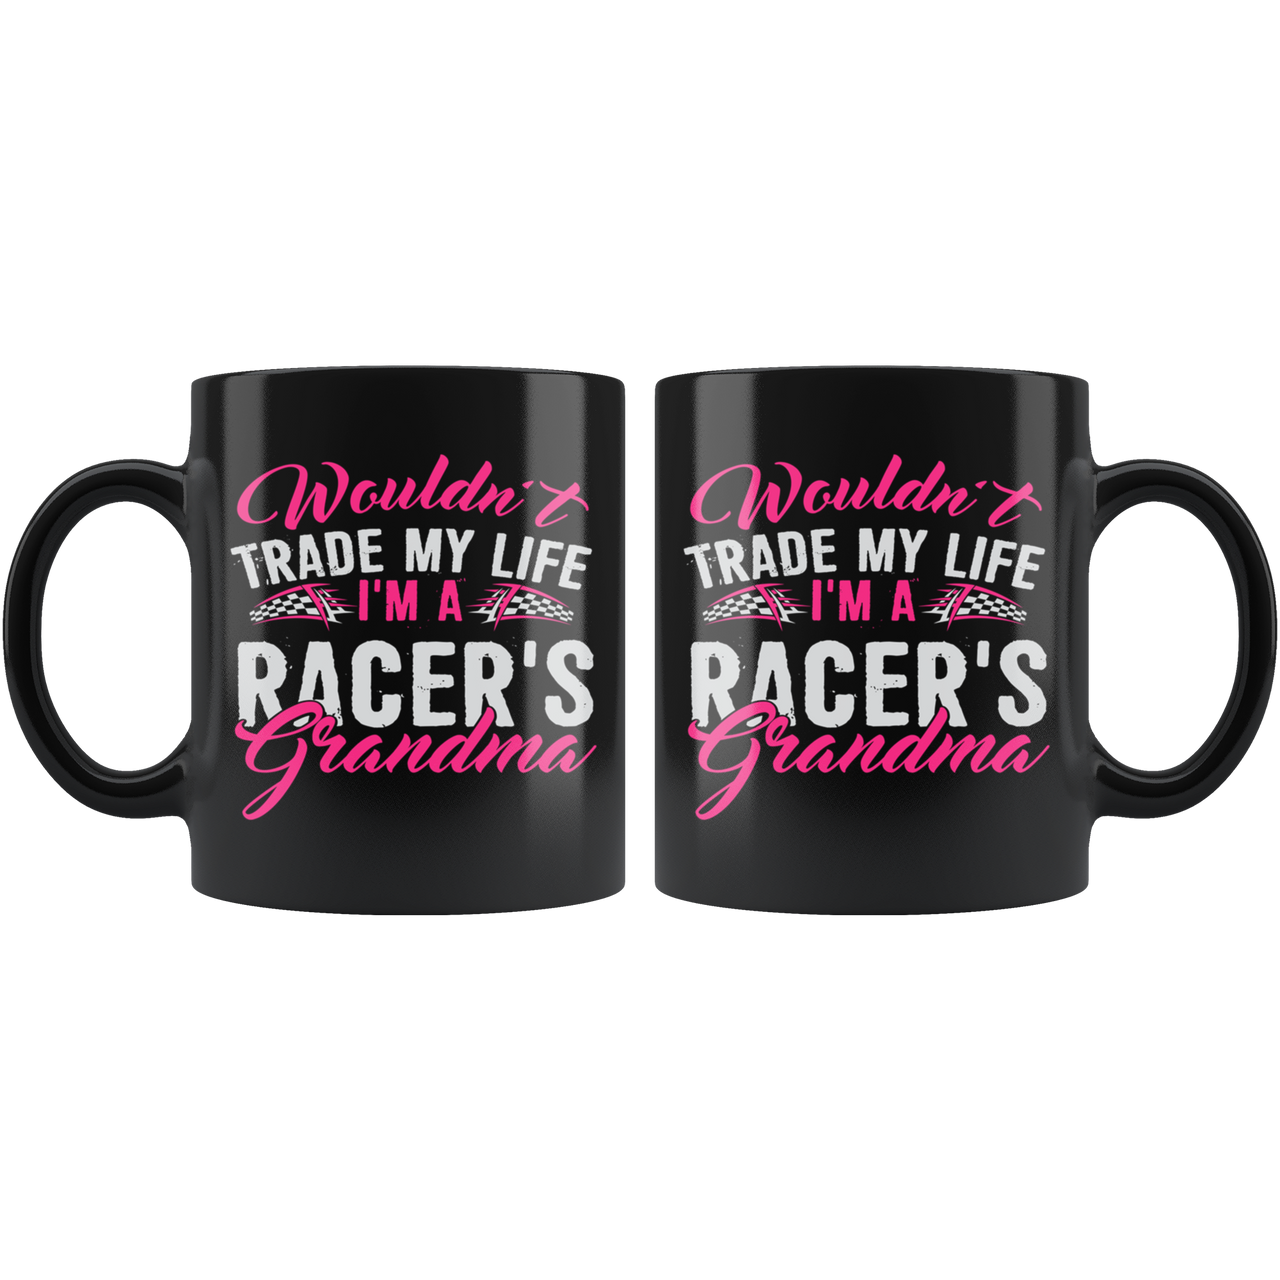 Wouldn't Trade My Life I'm A Racer's Grandma Mug!